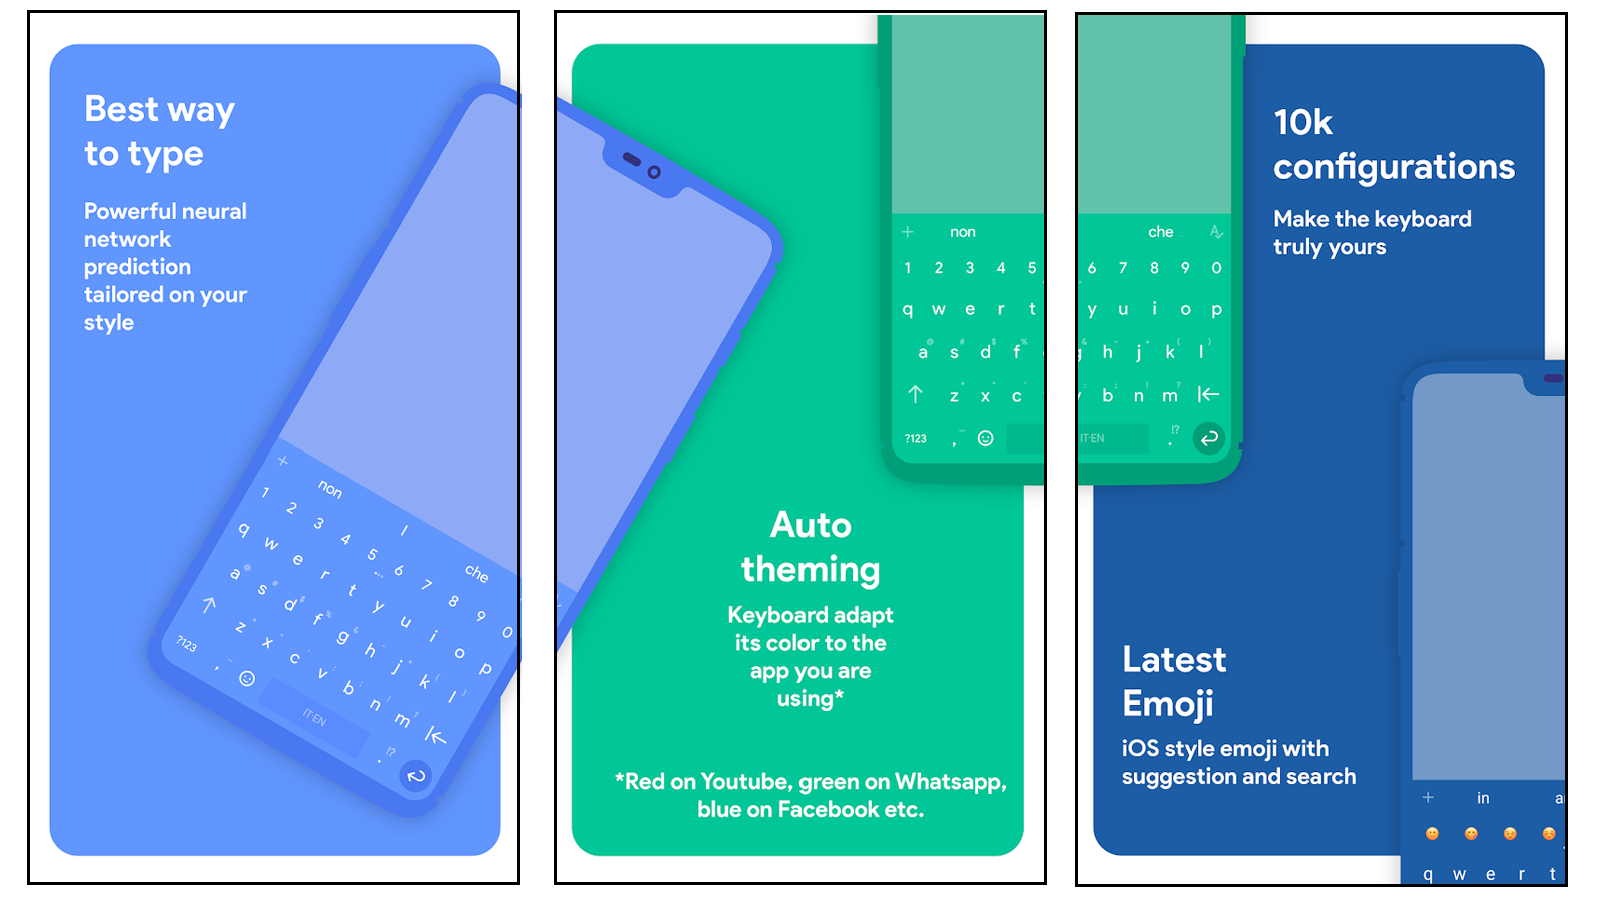 Ứng dụng bàn phím Android miễn phí Chrooma có thể thay đổi màu chủ đề để phù hợp với ứng dụng bạn đang sử dụng